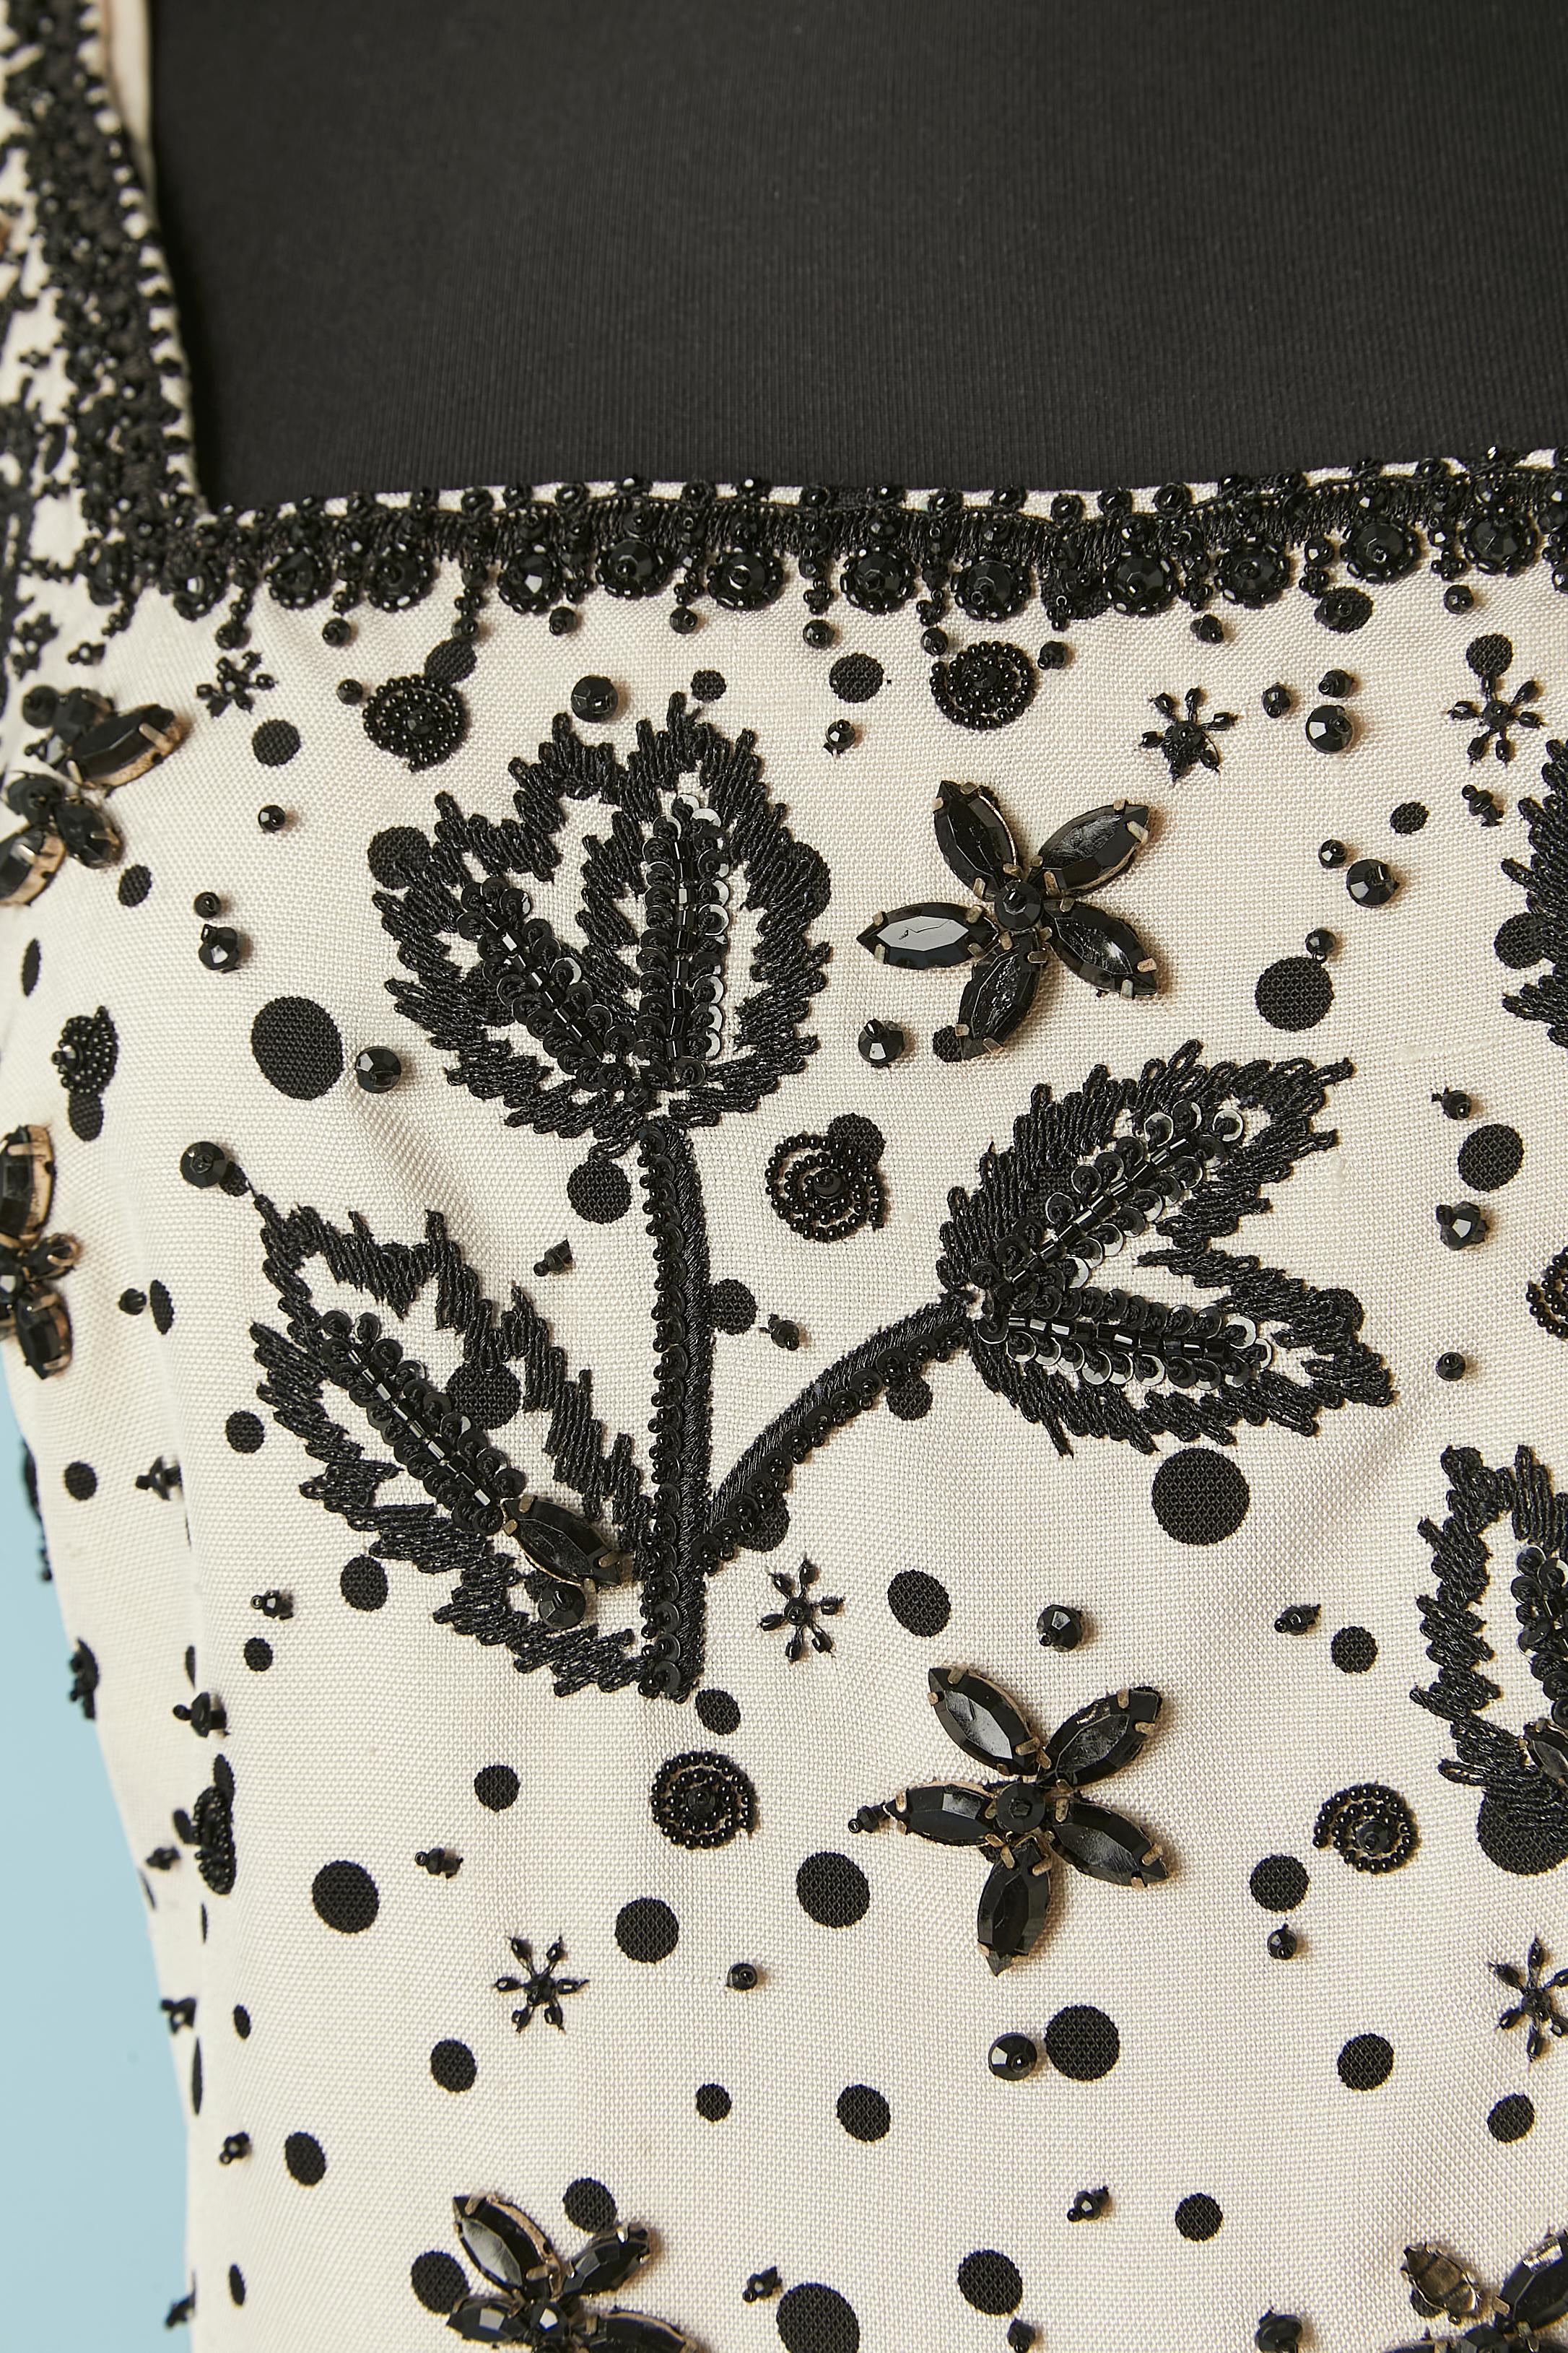 Weißes Rohseiden-Cocktailkleid mit schwarzen Tupfen und Stickereien aus schwarzem Garn, Perlen und schwarzem Strass. 
Kein Etikett für die Stoffzusammensetzung, aber das Futter ist aus Seide. Reißverschluss und Haken-Ösen-Verschluss in der hinteren